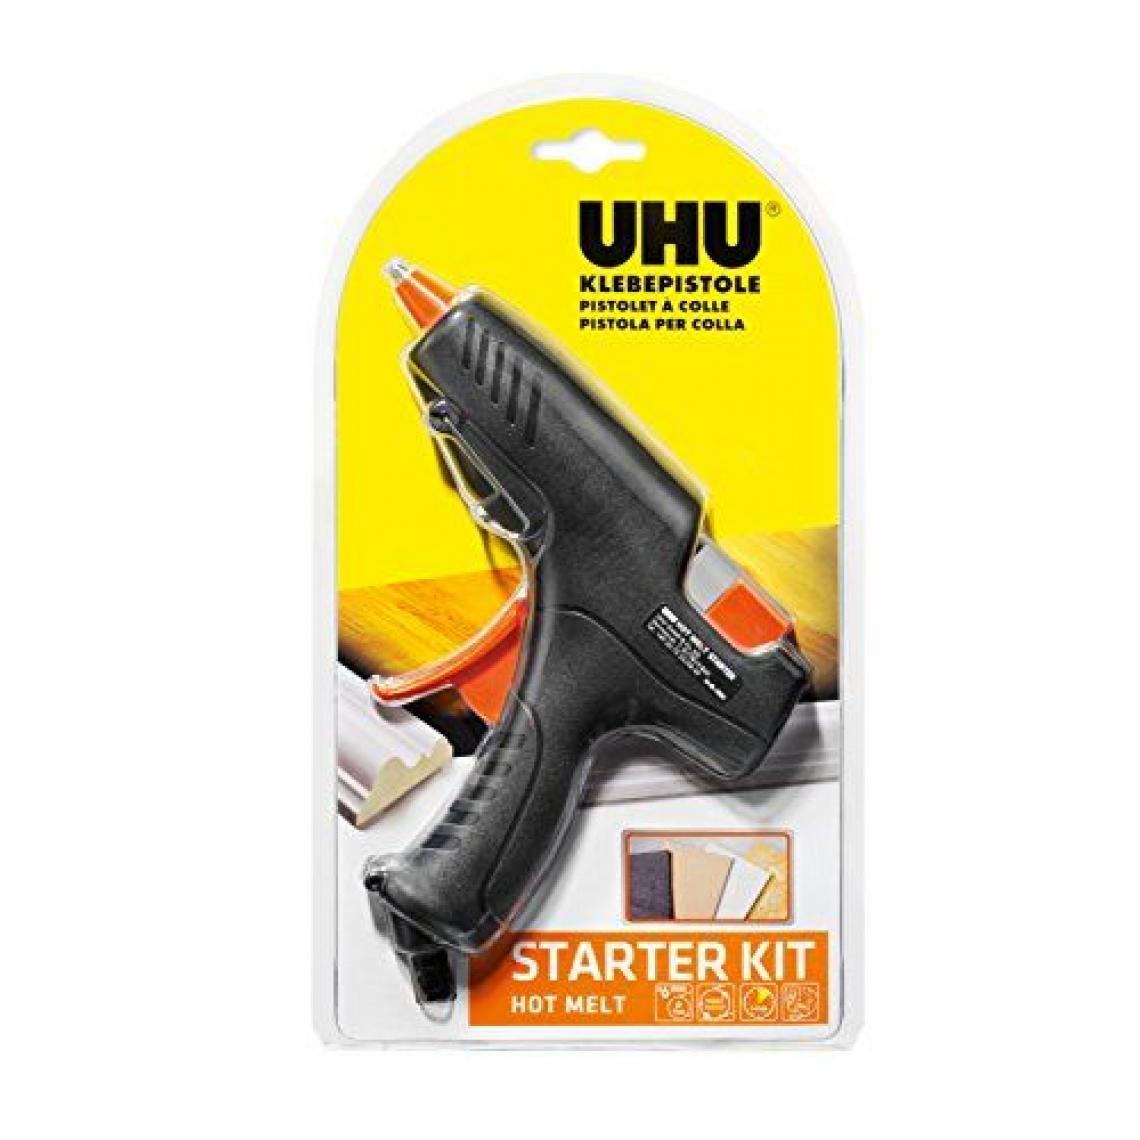 Uhu - UHU Pistolet de collage à chaud Hot Melt kit de démarrage - Colles et pistolets à colle